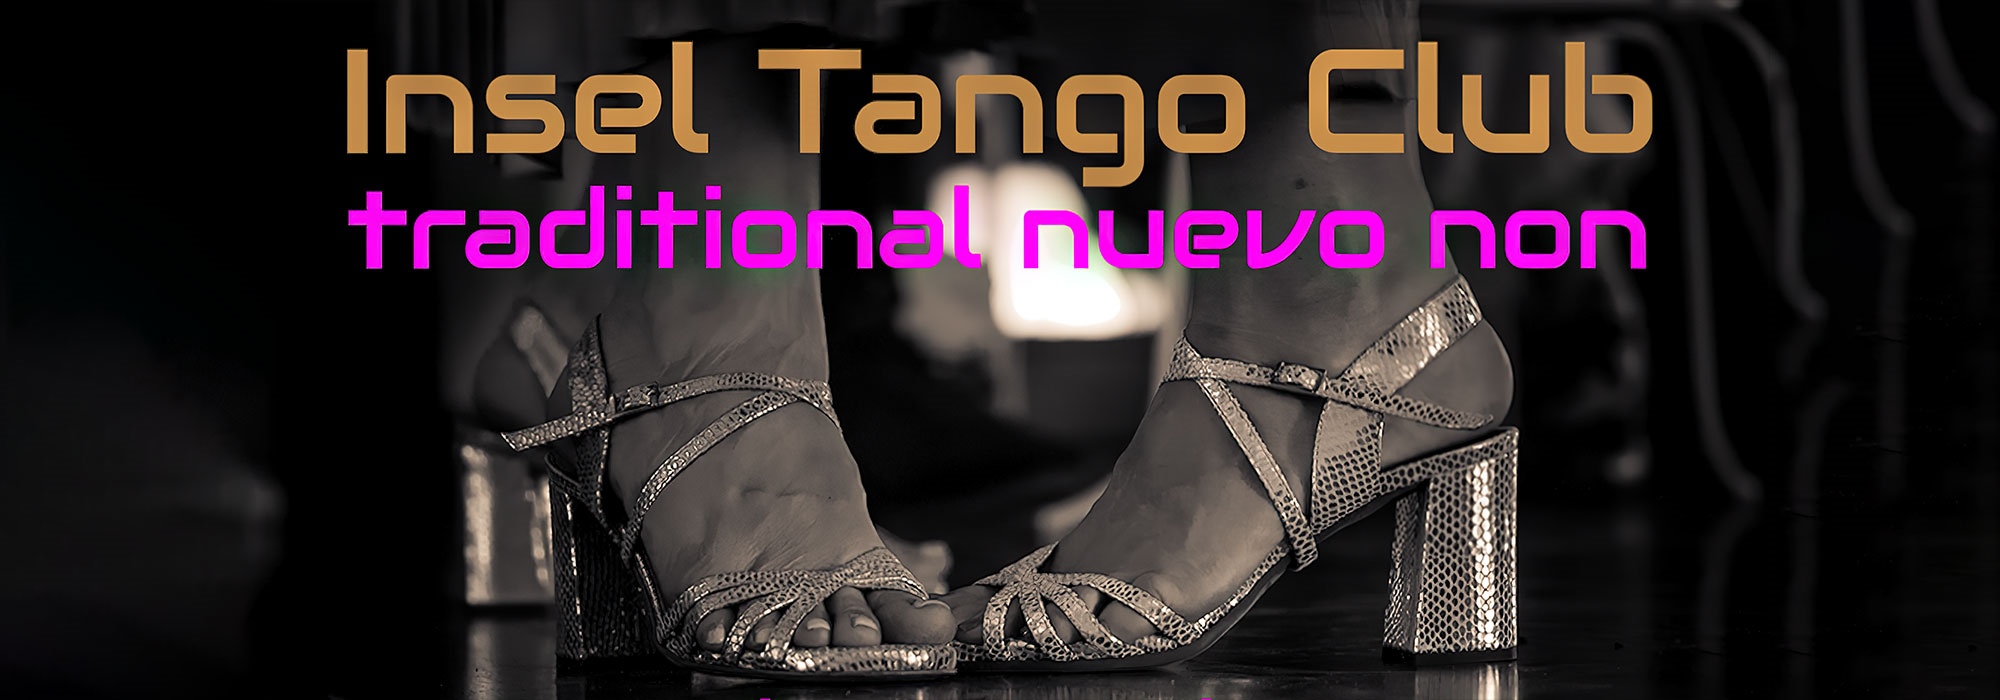 INSEL Tango Club